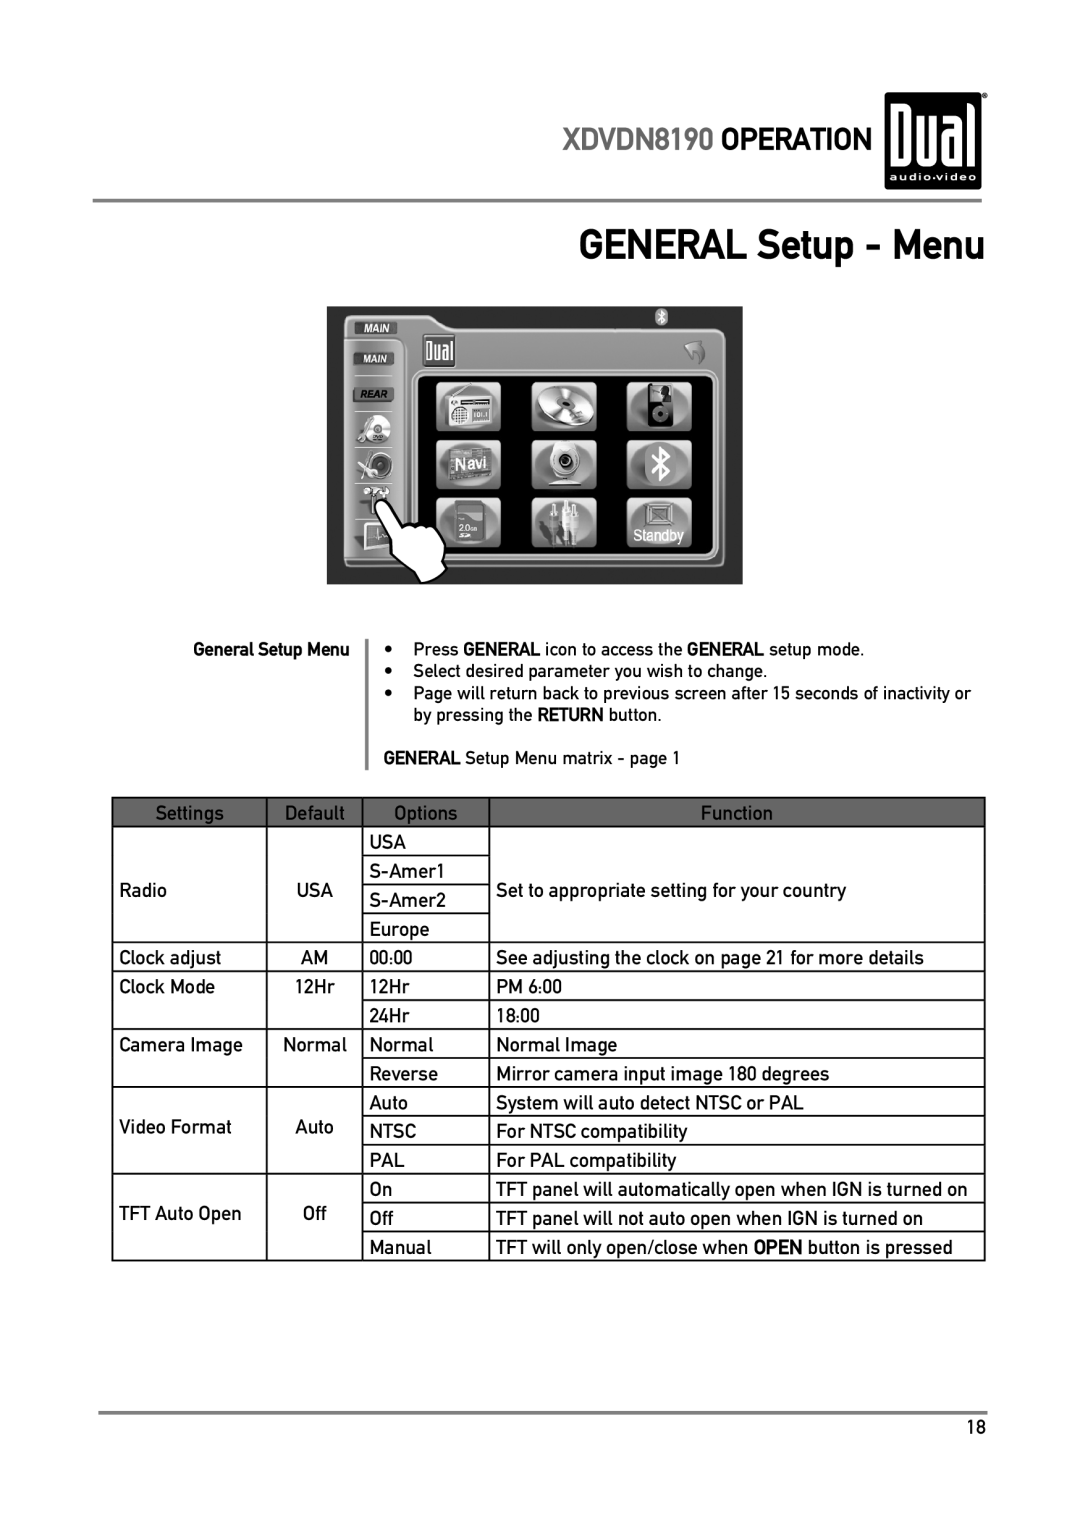 Dual owner manual GENERAL Setup - Menu, XDVDN8190 OPERATION 